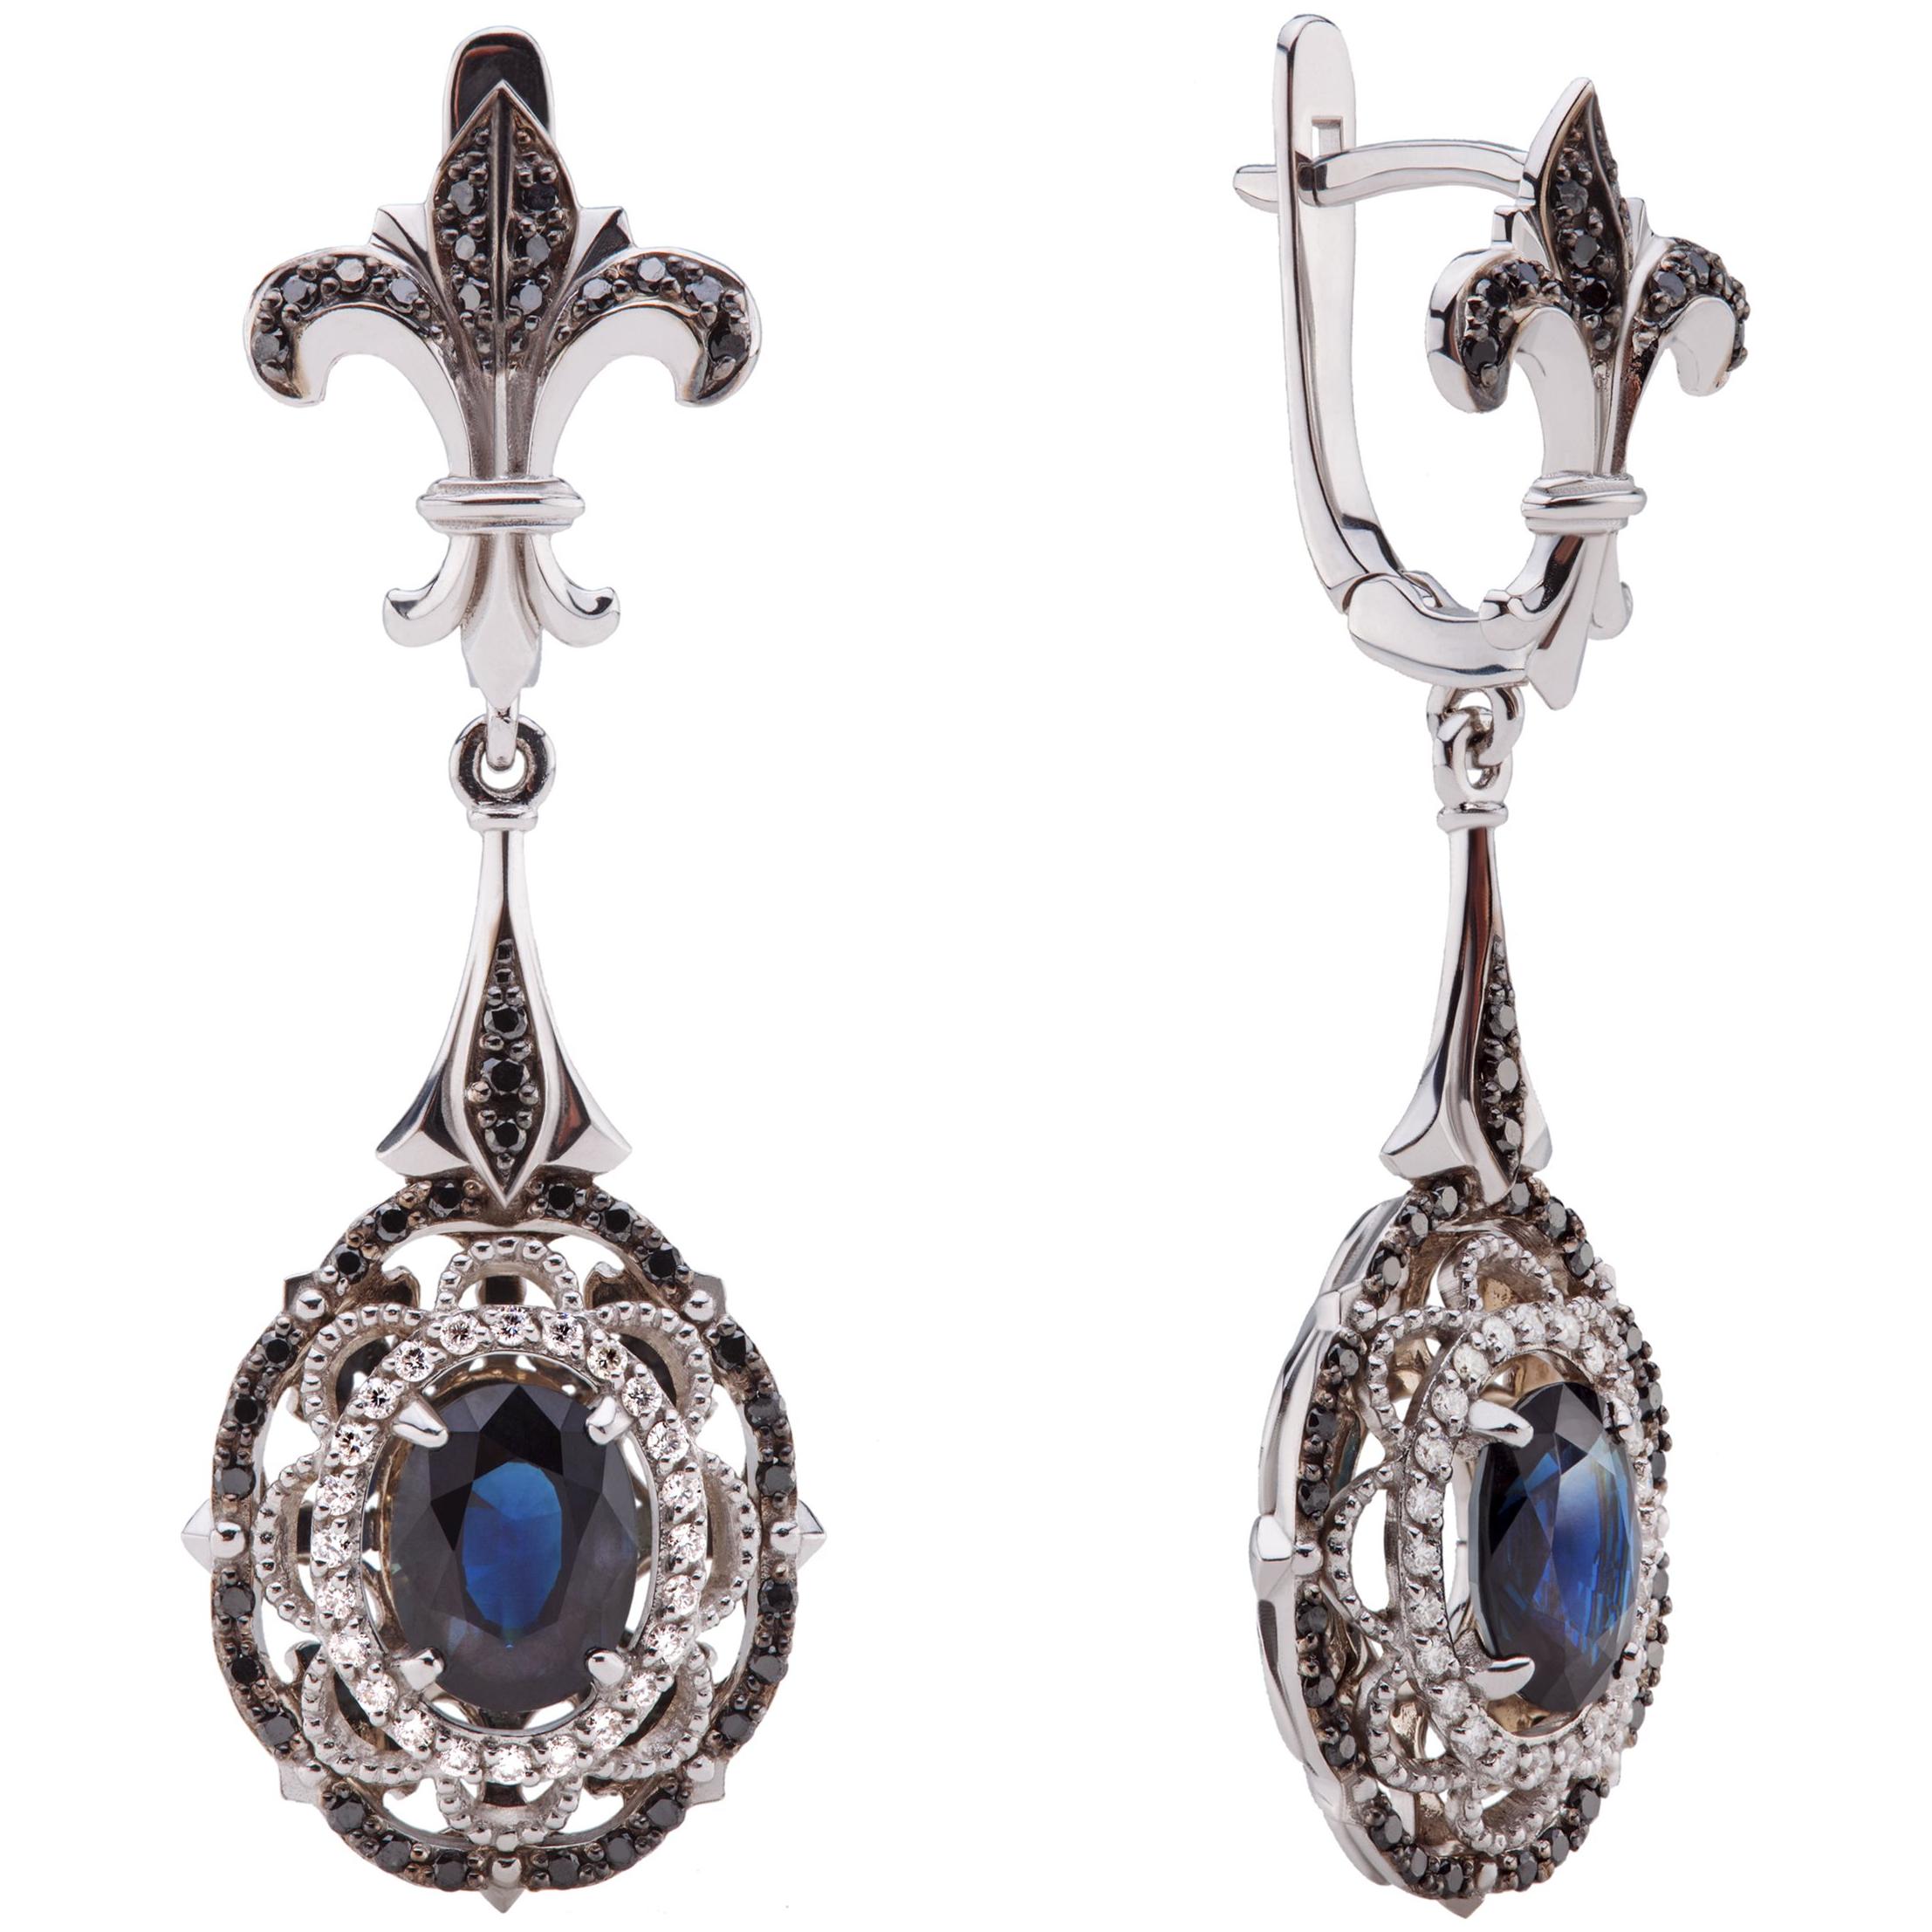 Сережки з колекції "Fleur de Lys" із білого золота та камінням Сапфір синій та Діамантами